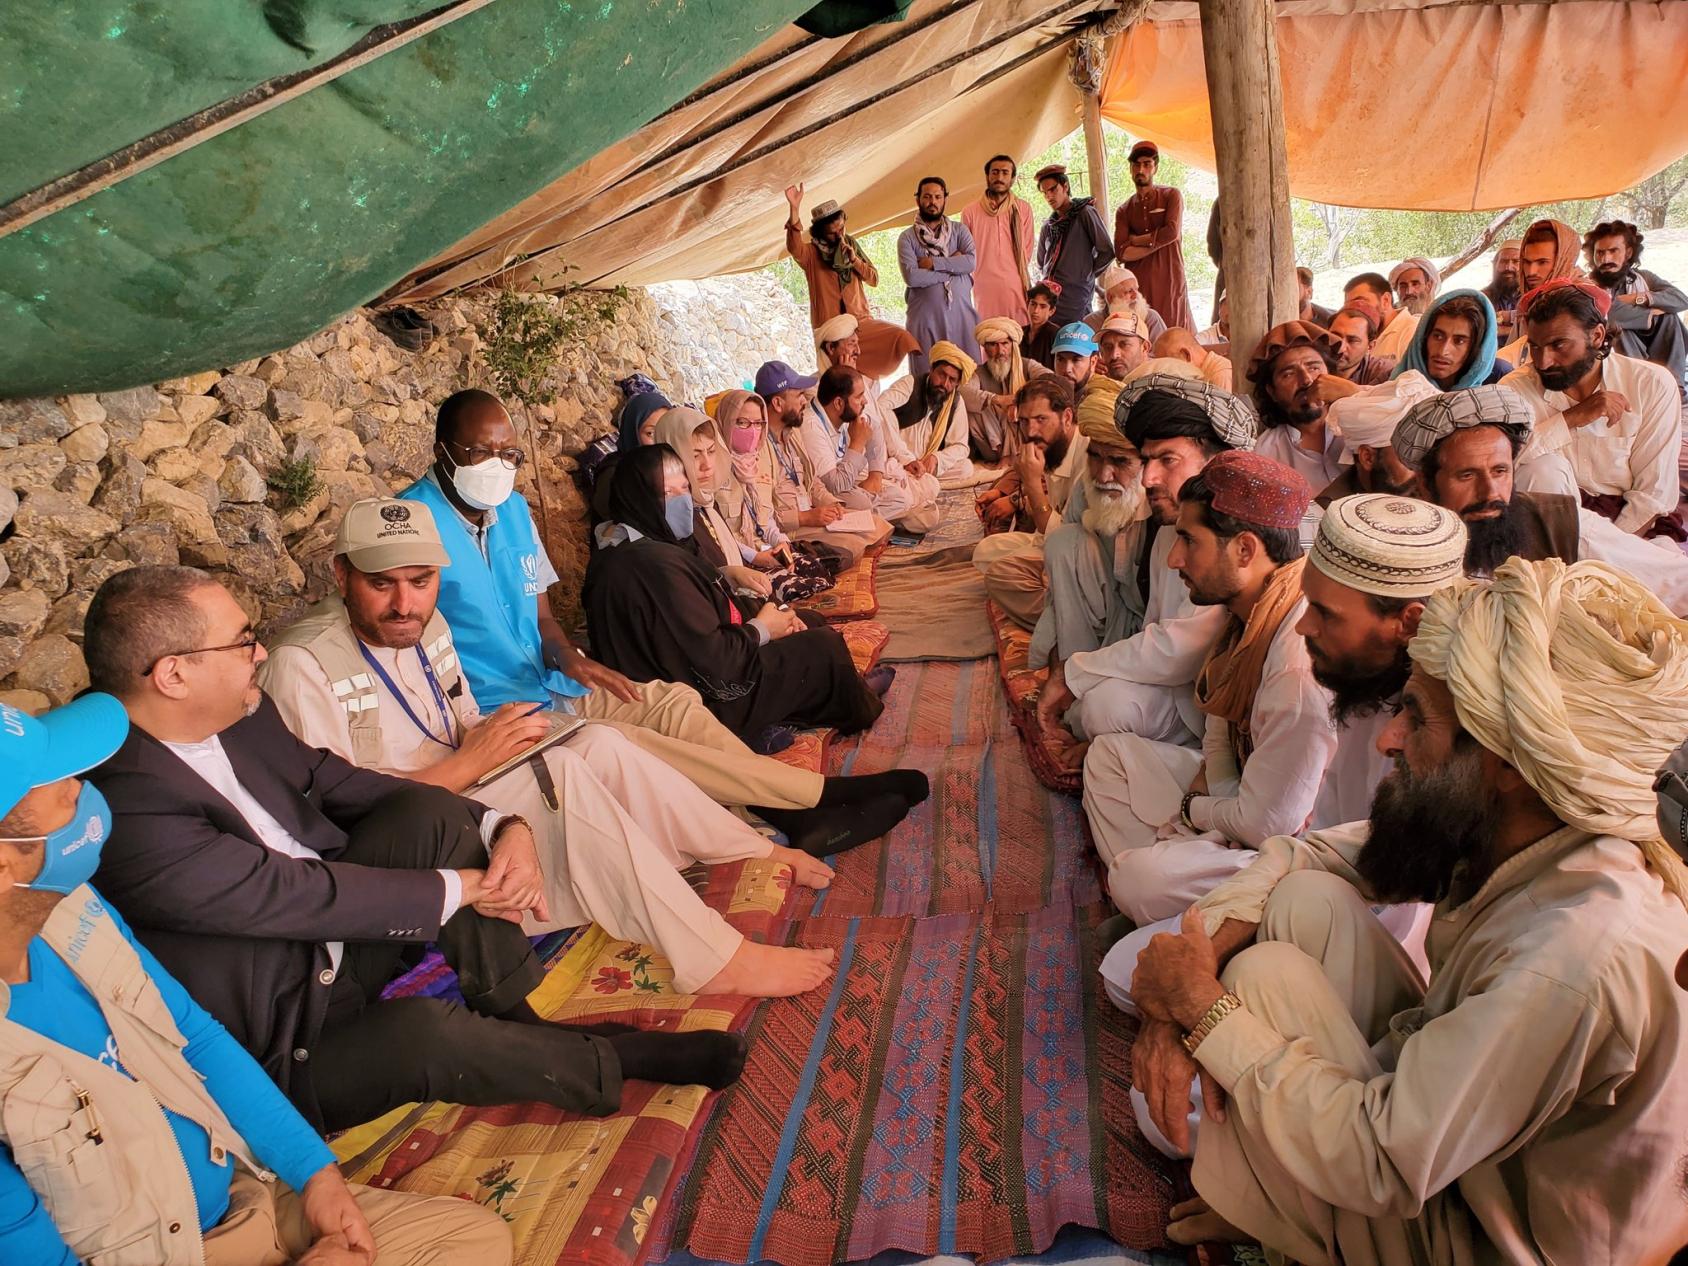 Д-р Рамиз и жители деревни Вори Калия сидят и беседуют в палатке